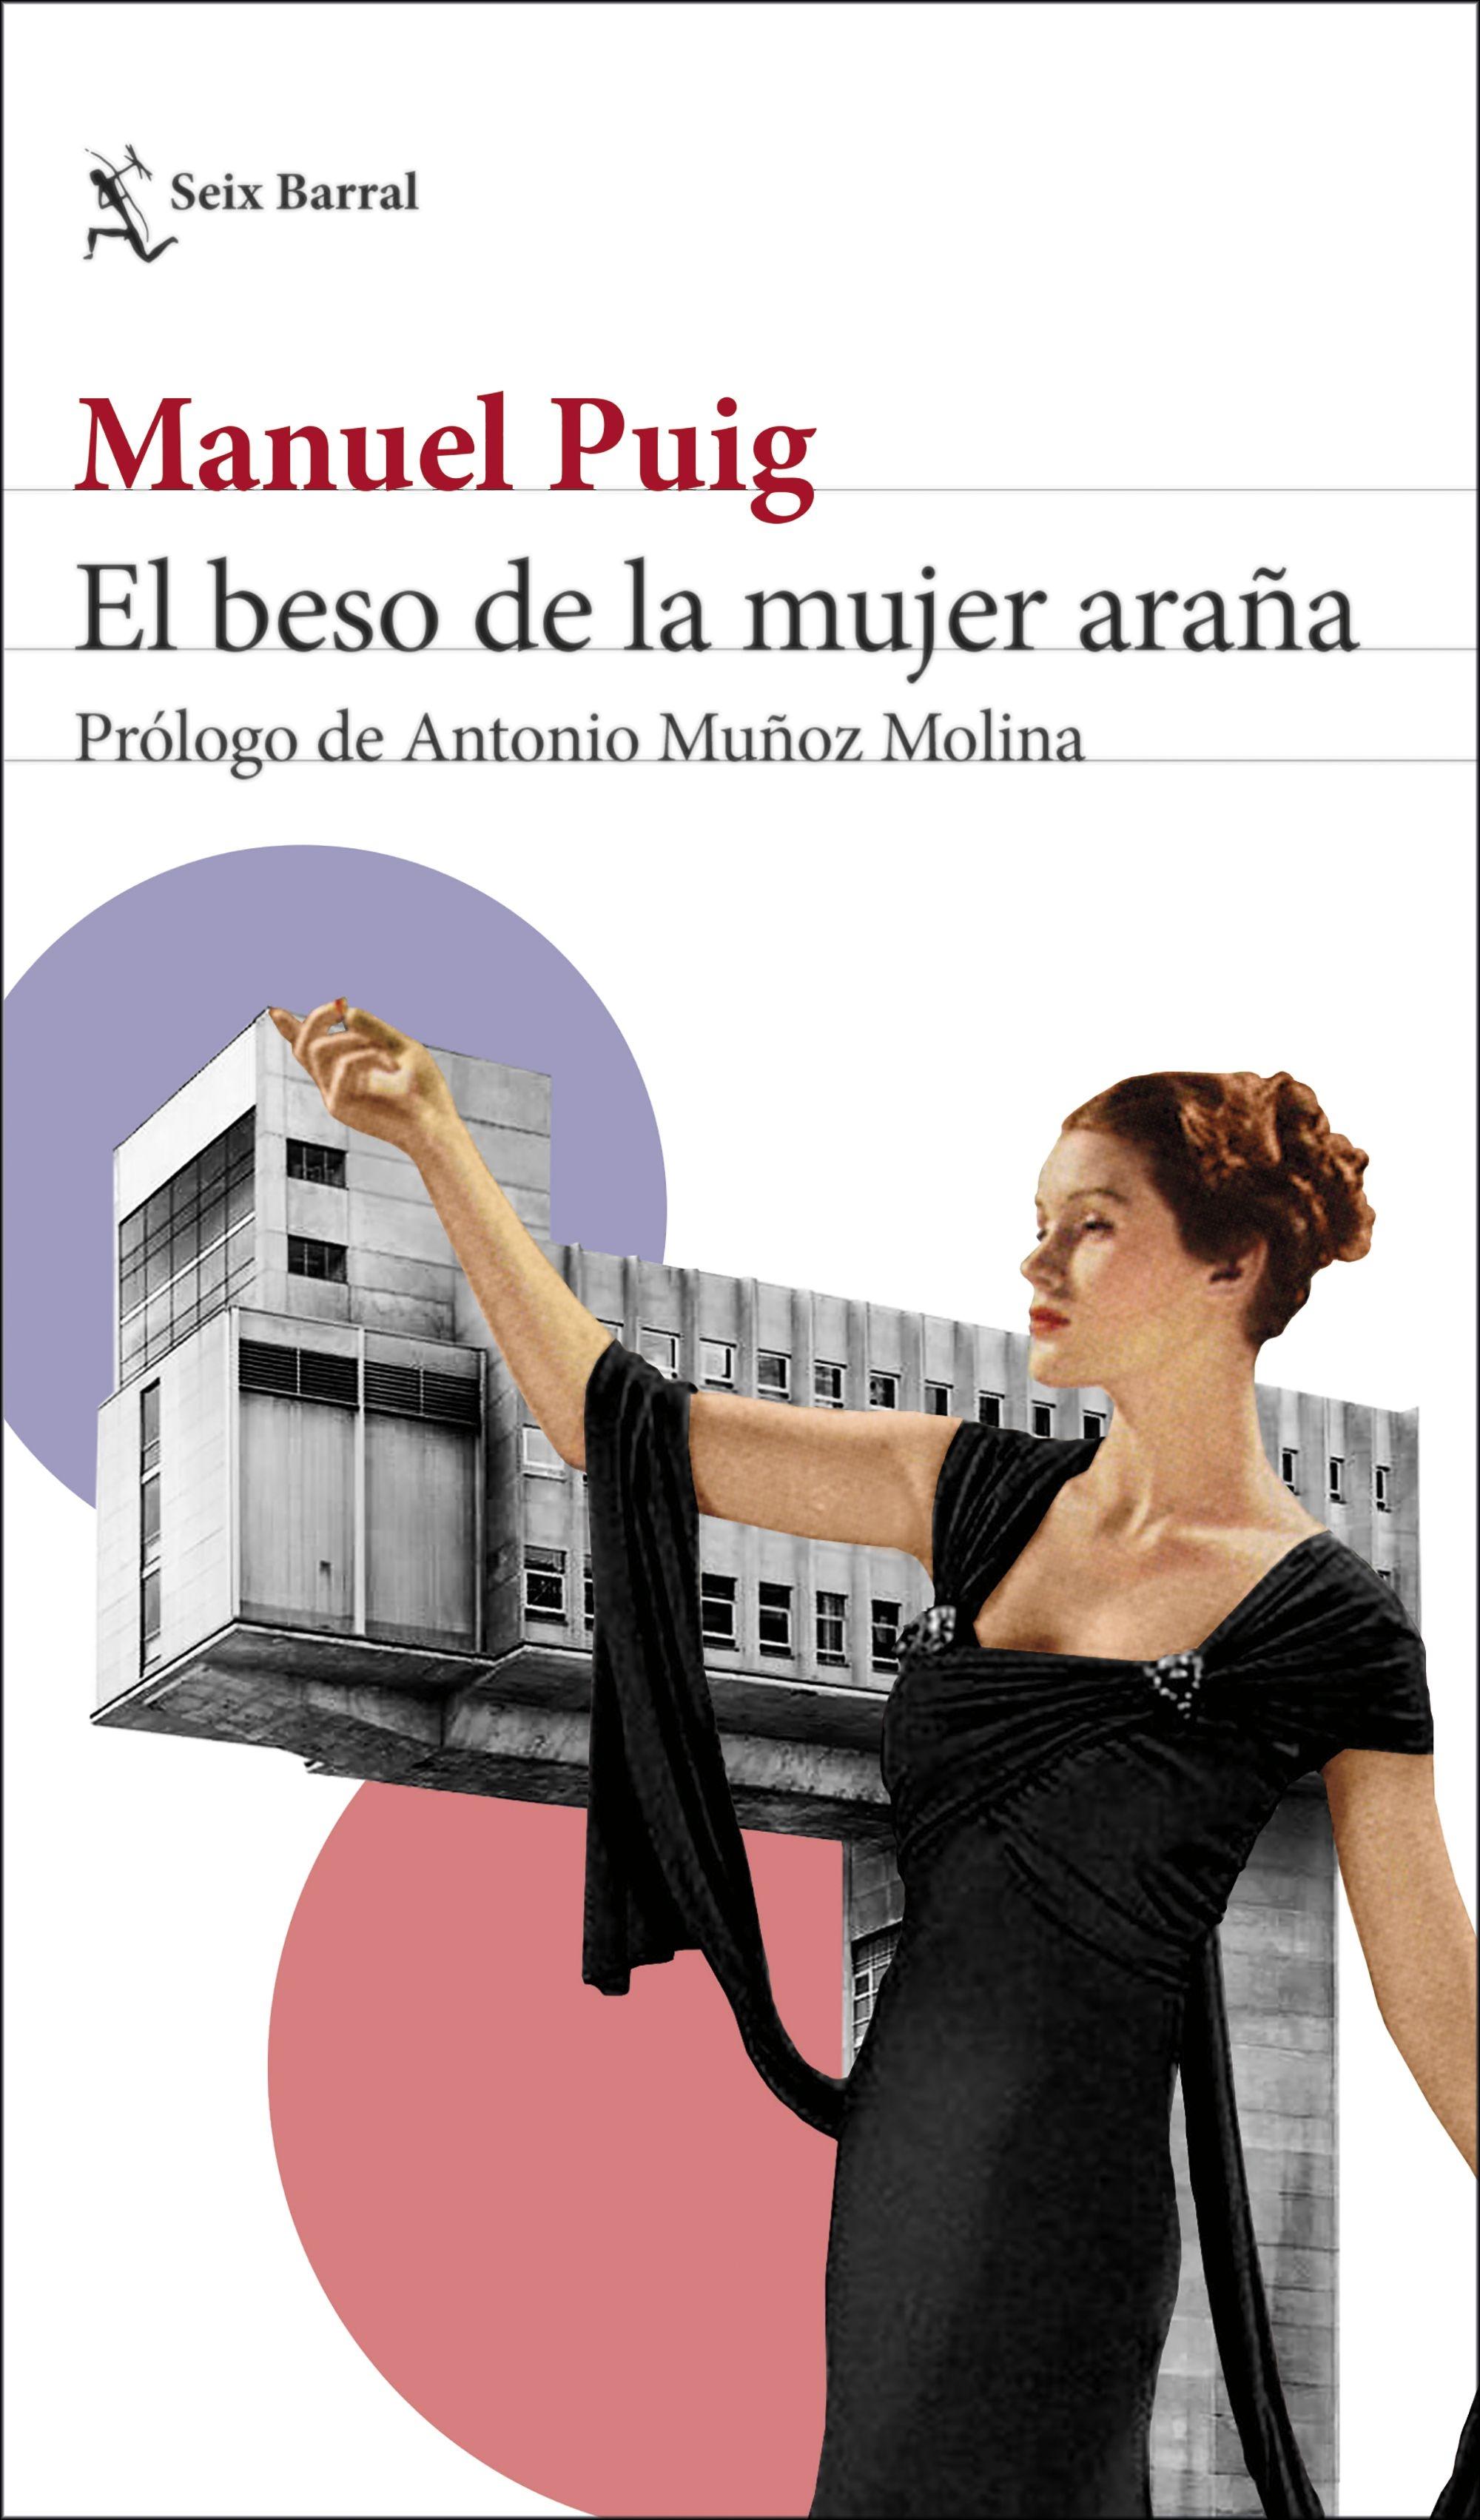 El Beso de la Mujer Araña "Prólogo de Antonio Muñoz Molina". 